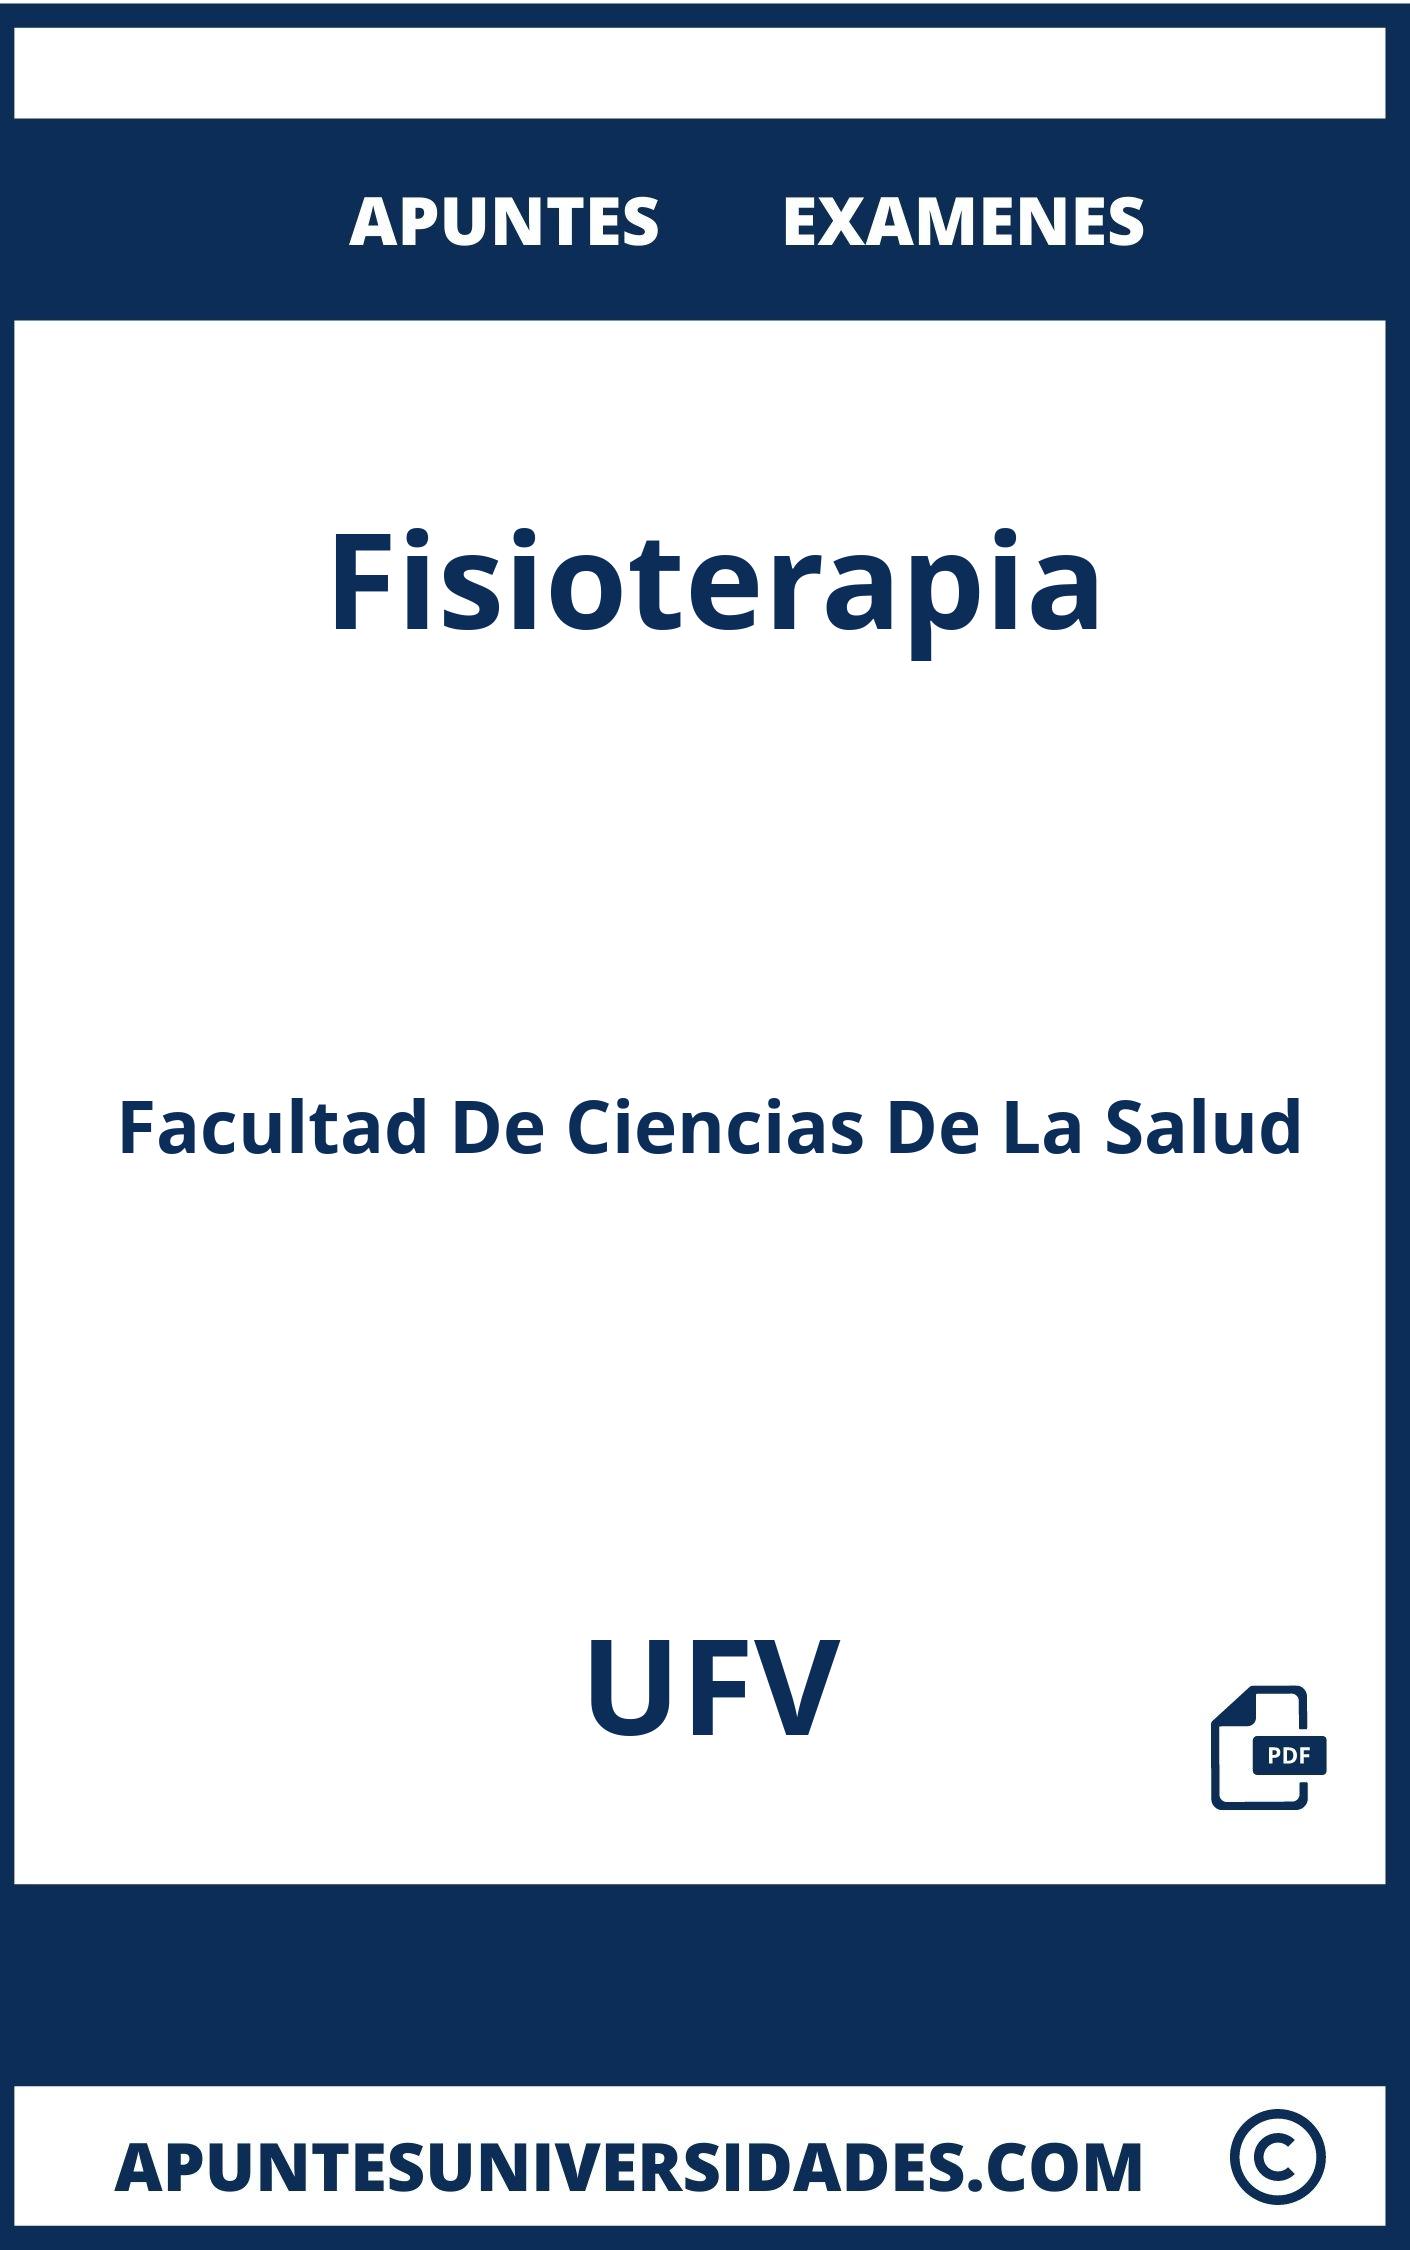 Apuntes y Examenes Fisioterapia UFV